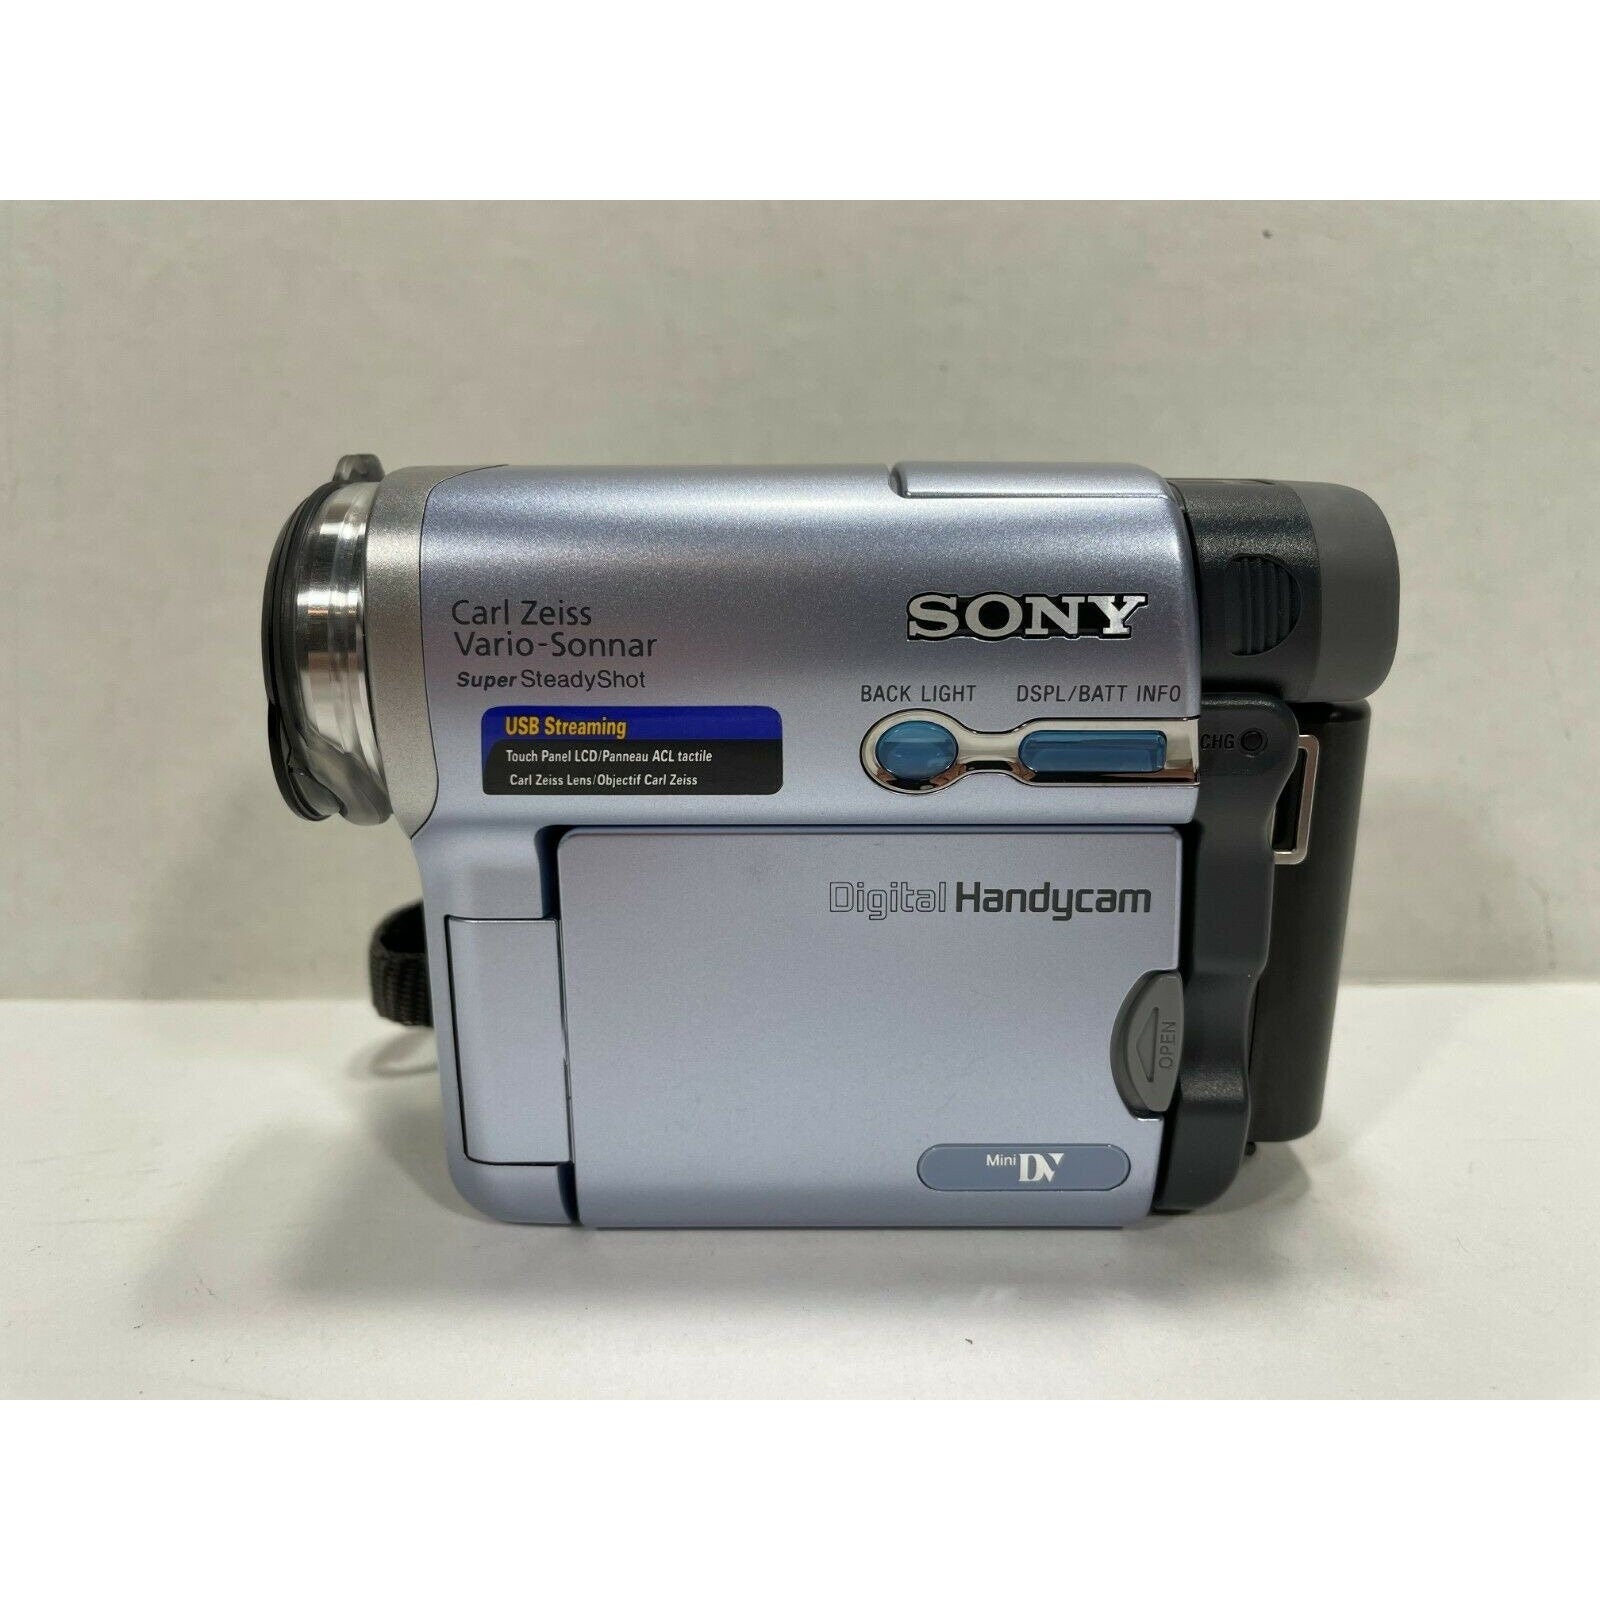 Sony DCR-TRV19 Digital Video Camera Recorder Handycam